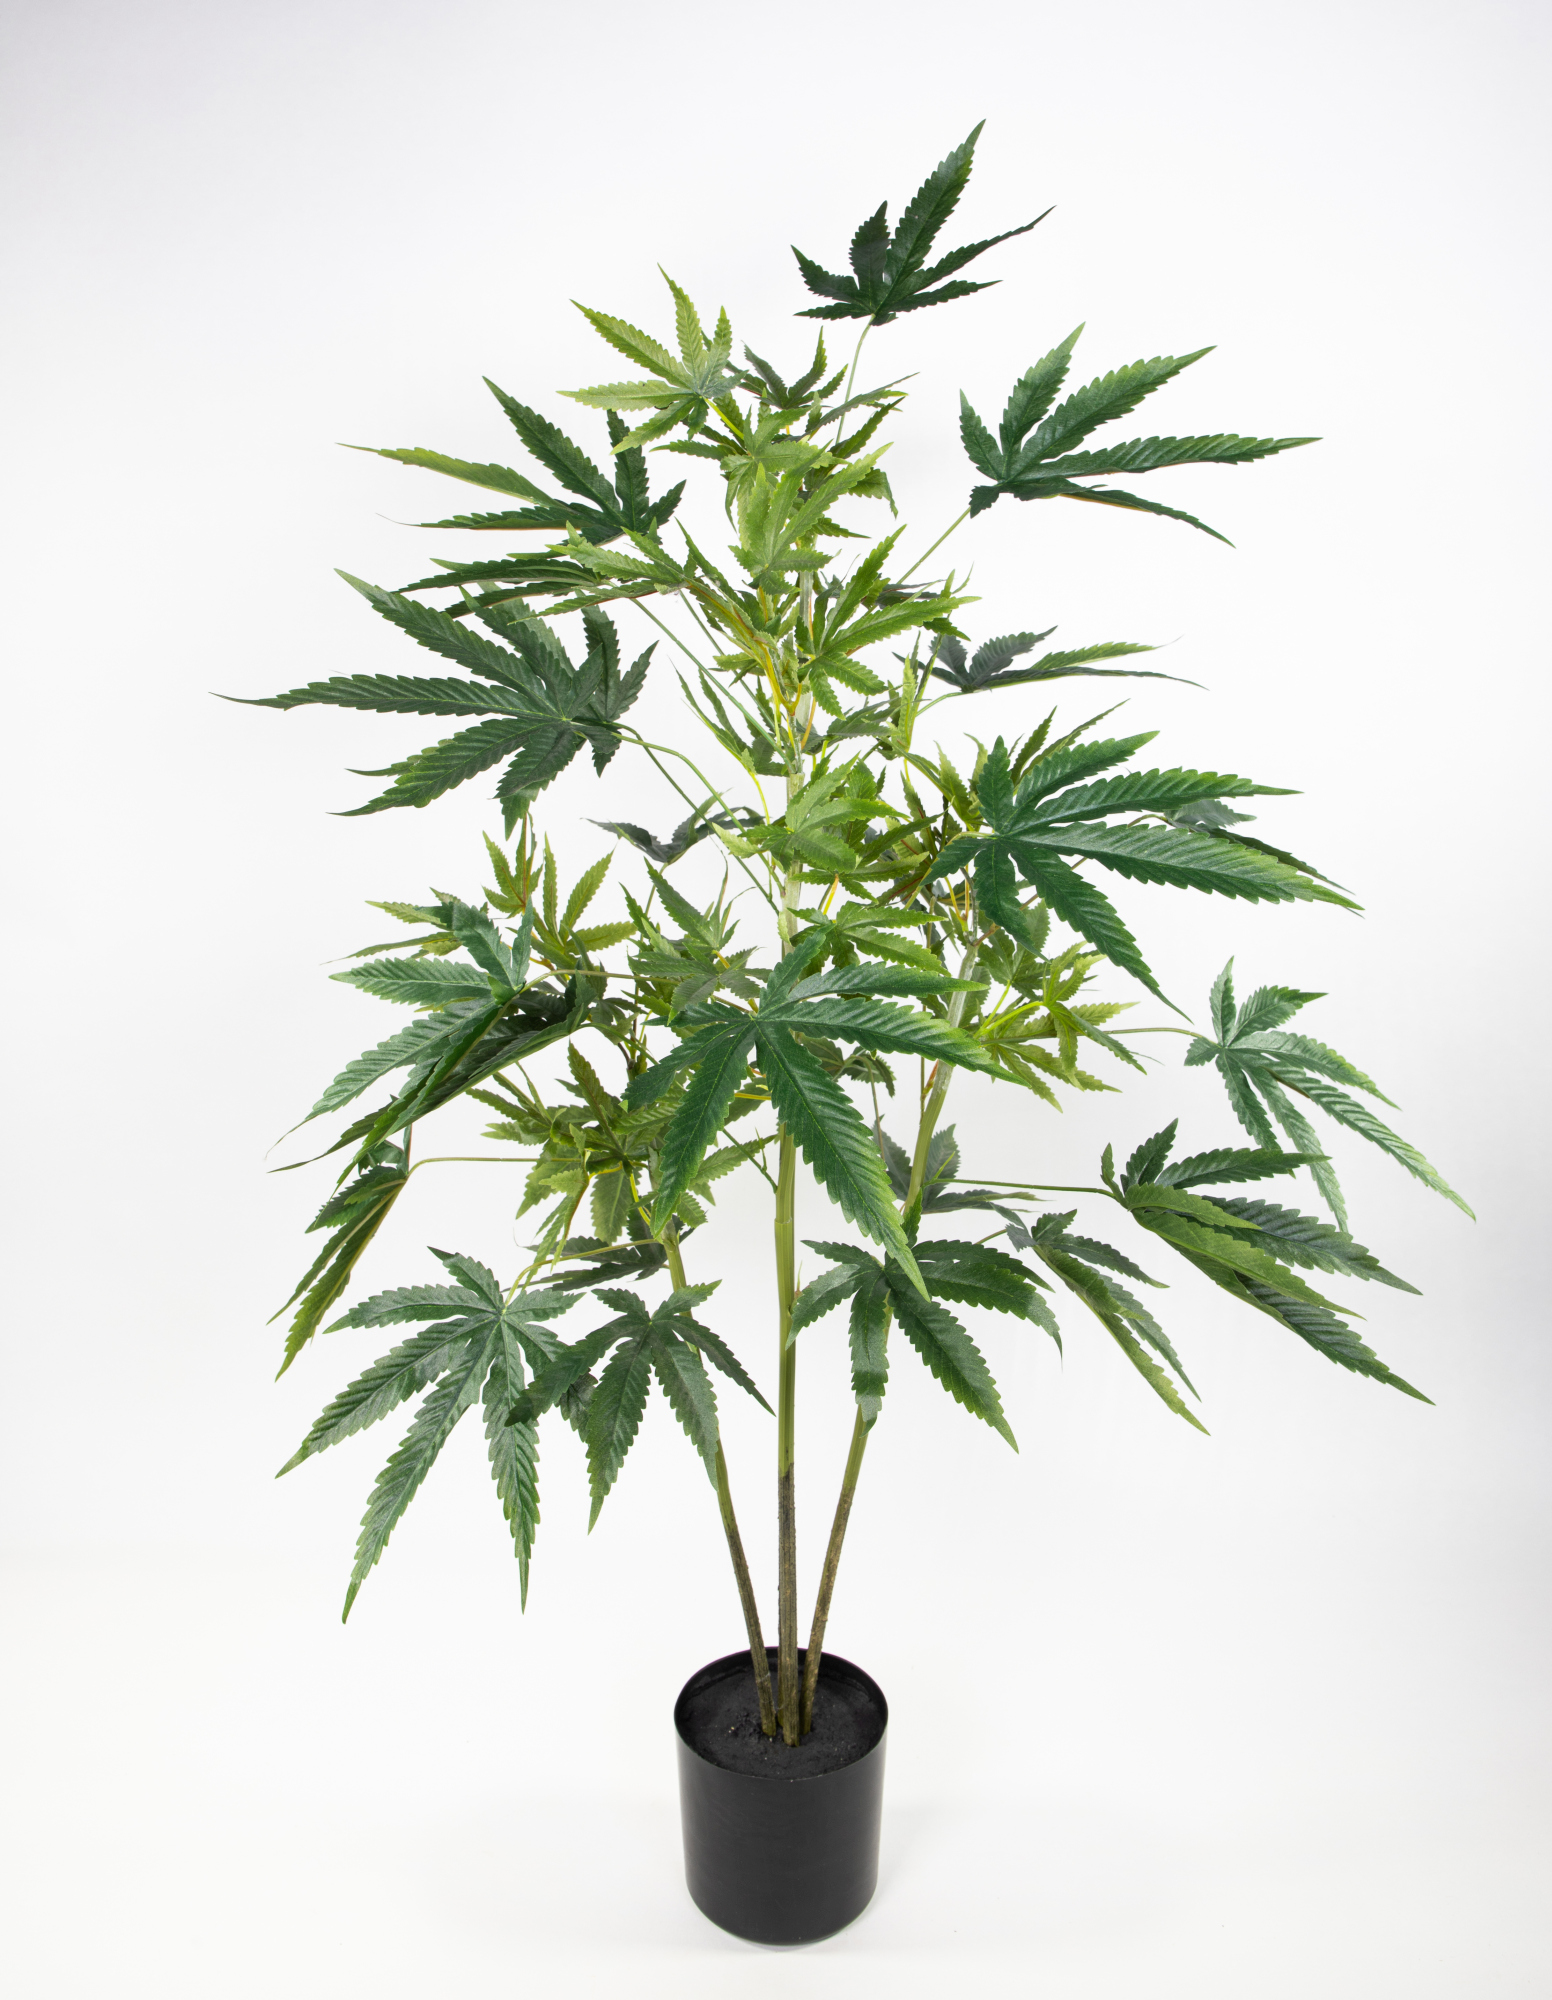 Hanfpflanze / Cannabispflanze 100cm GA künstlicher Baum Kunstbaum Kunstpflanzen Hanf Cannabis Weed